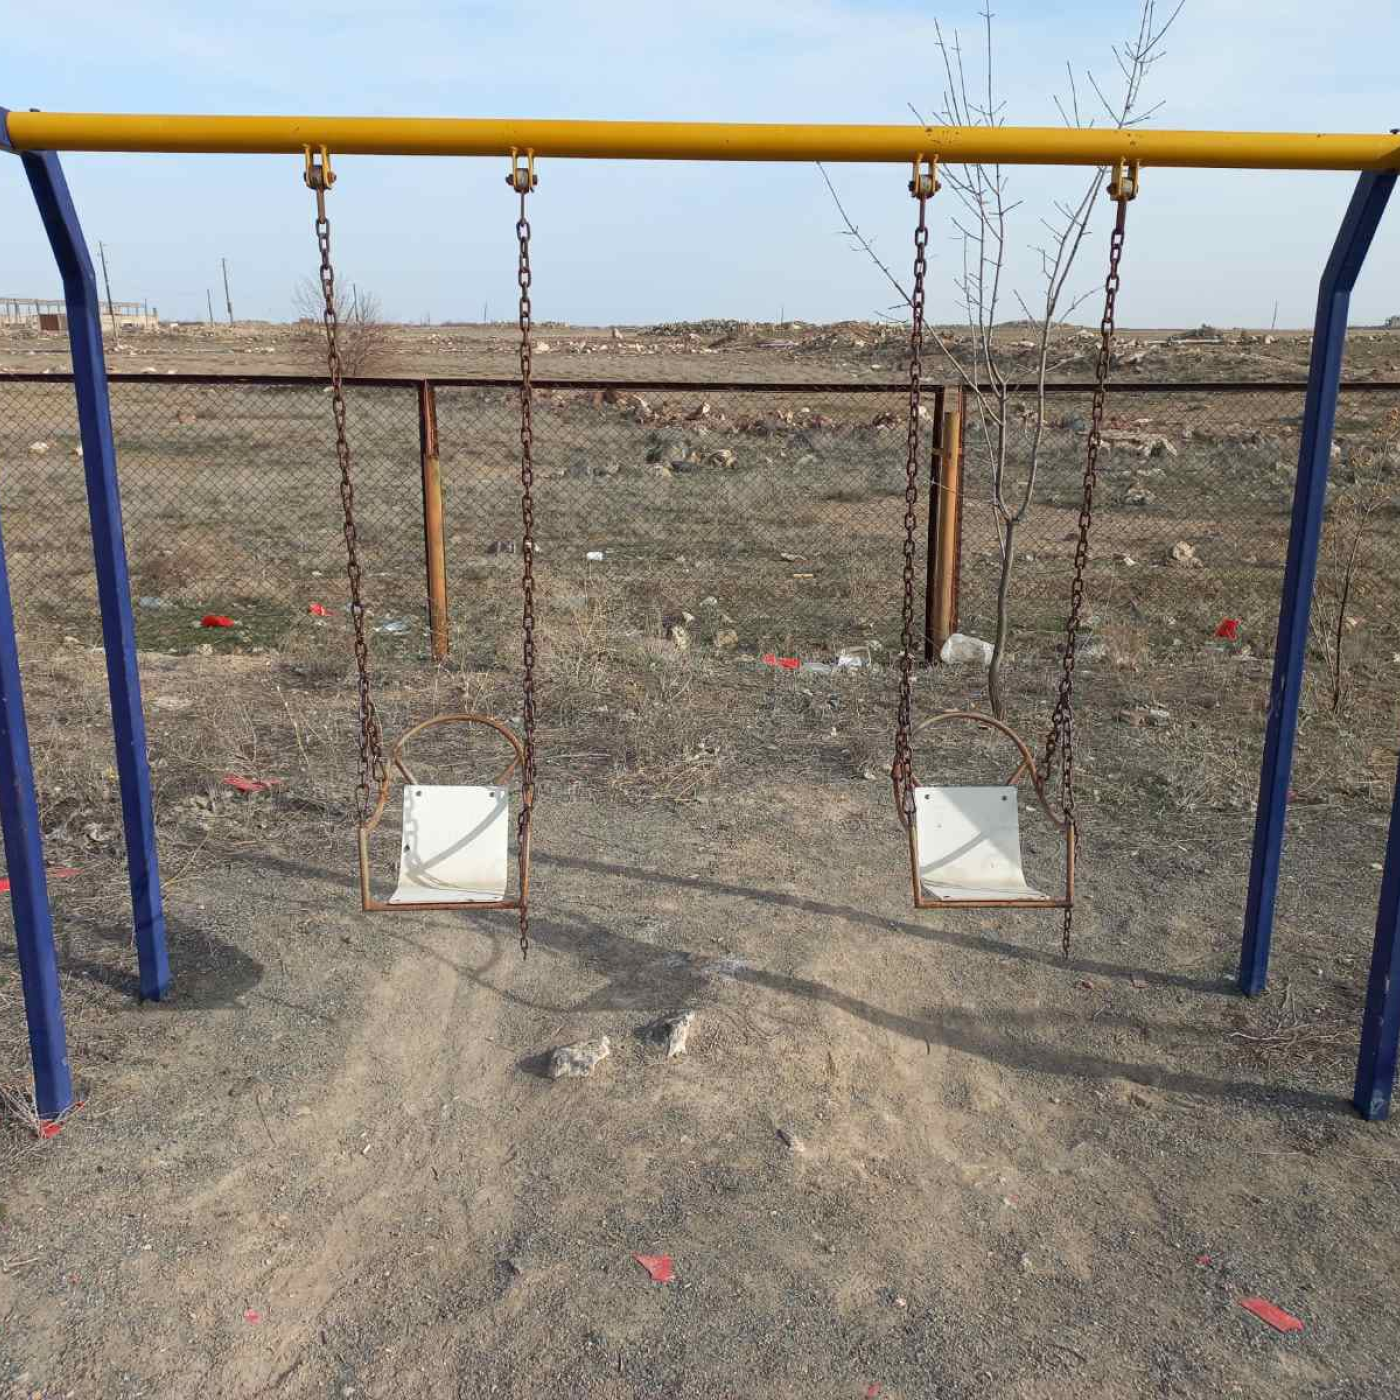 Old empty swing set in Armenia